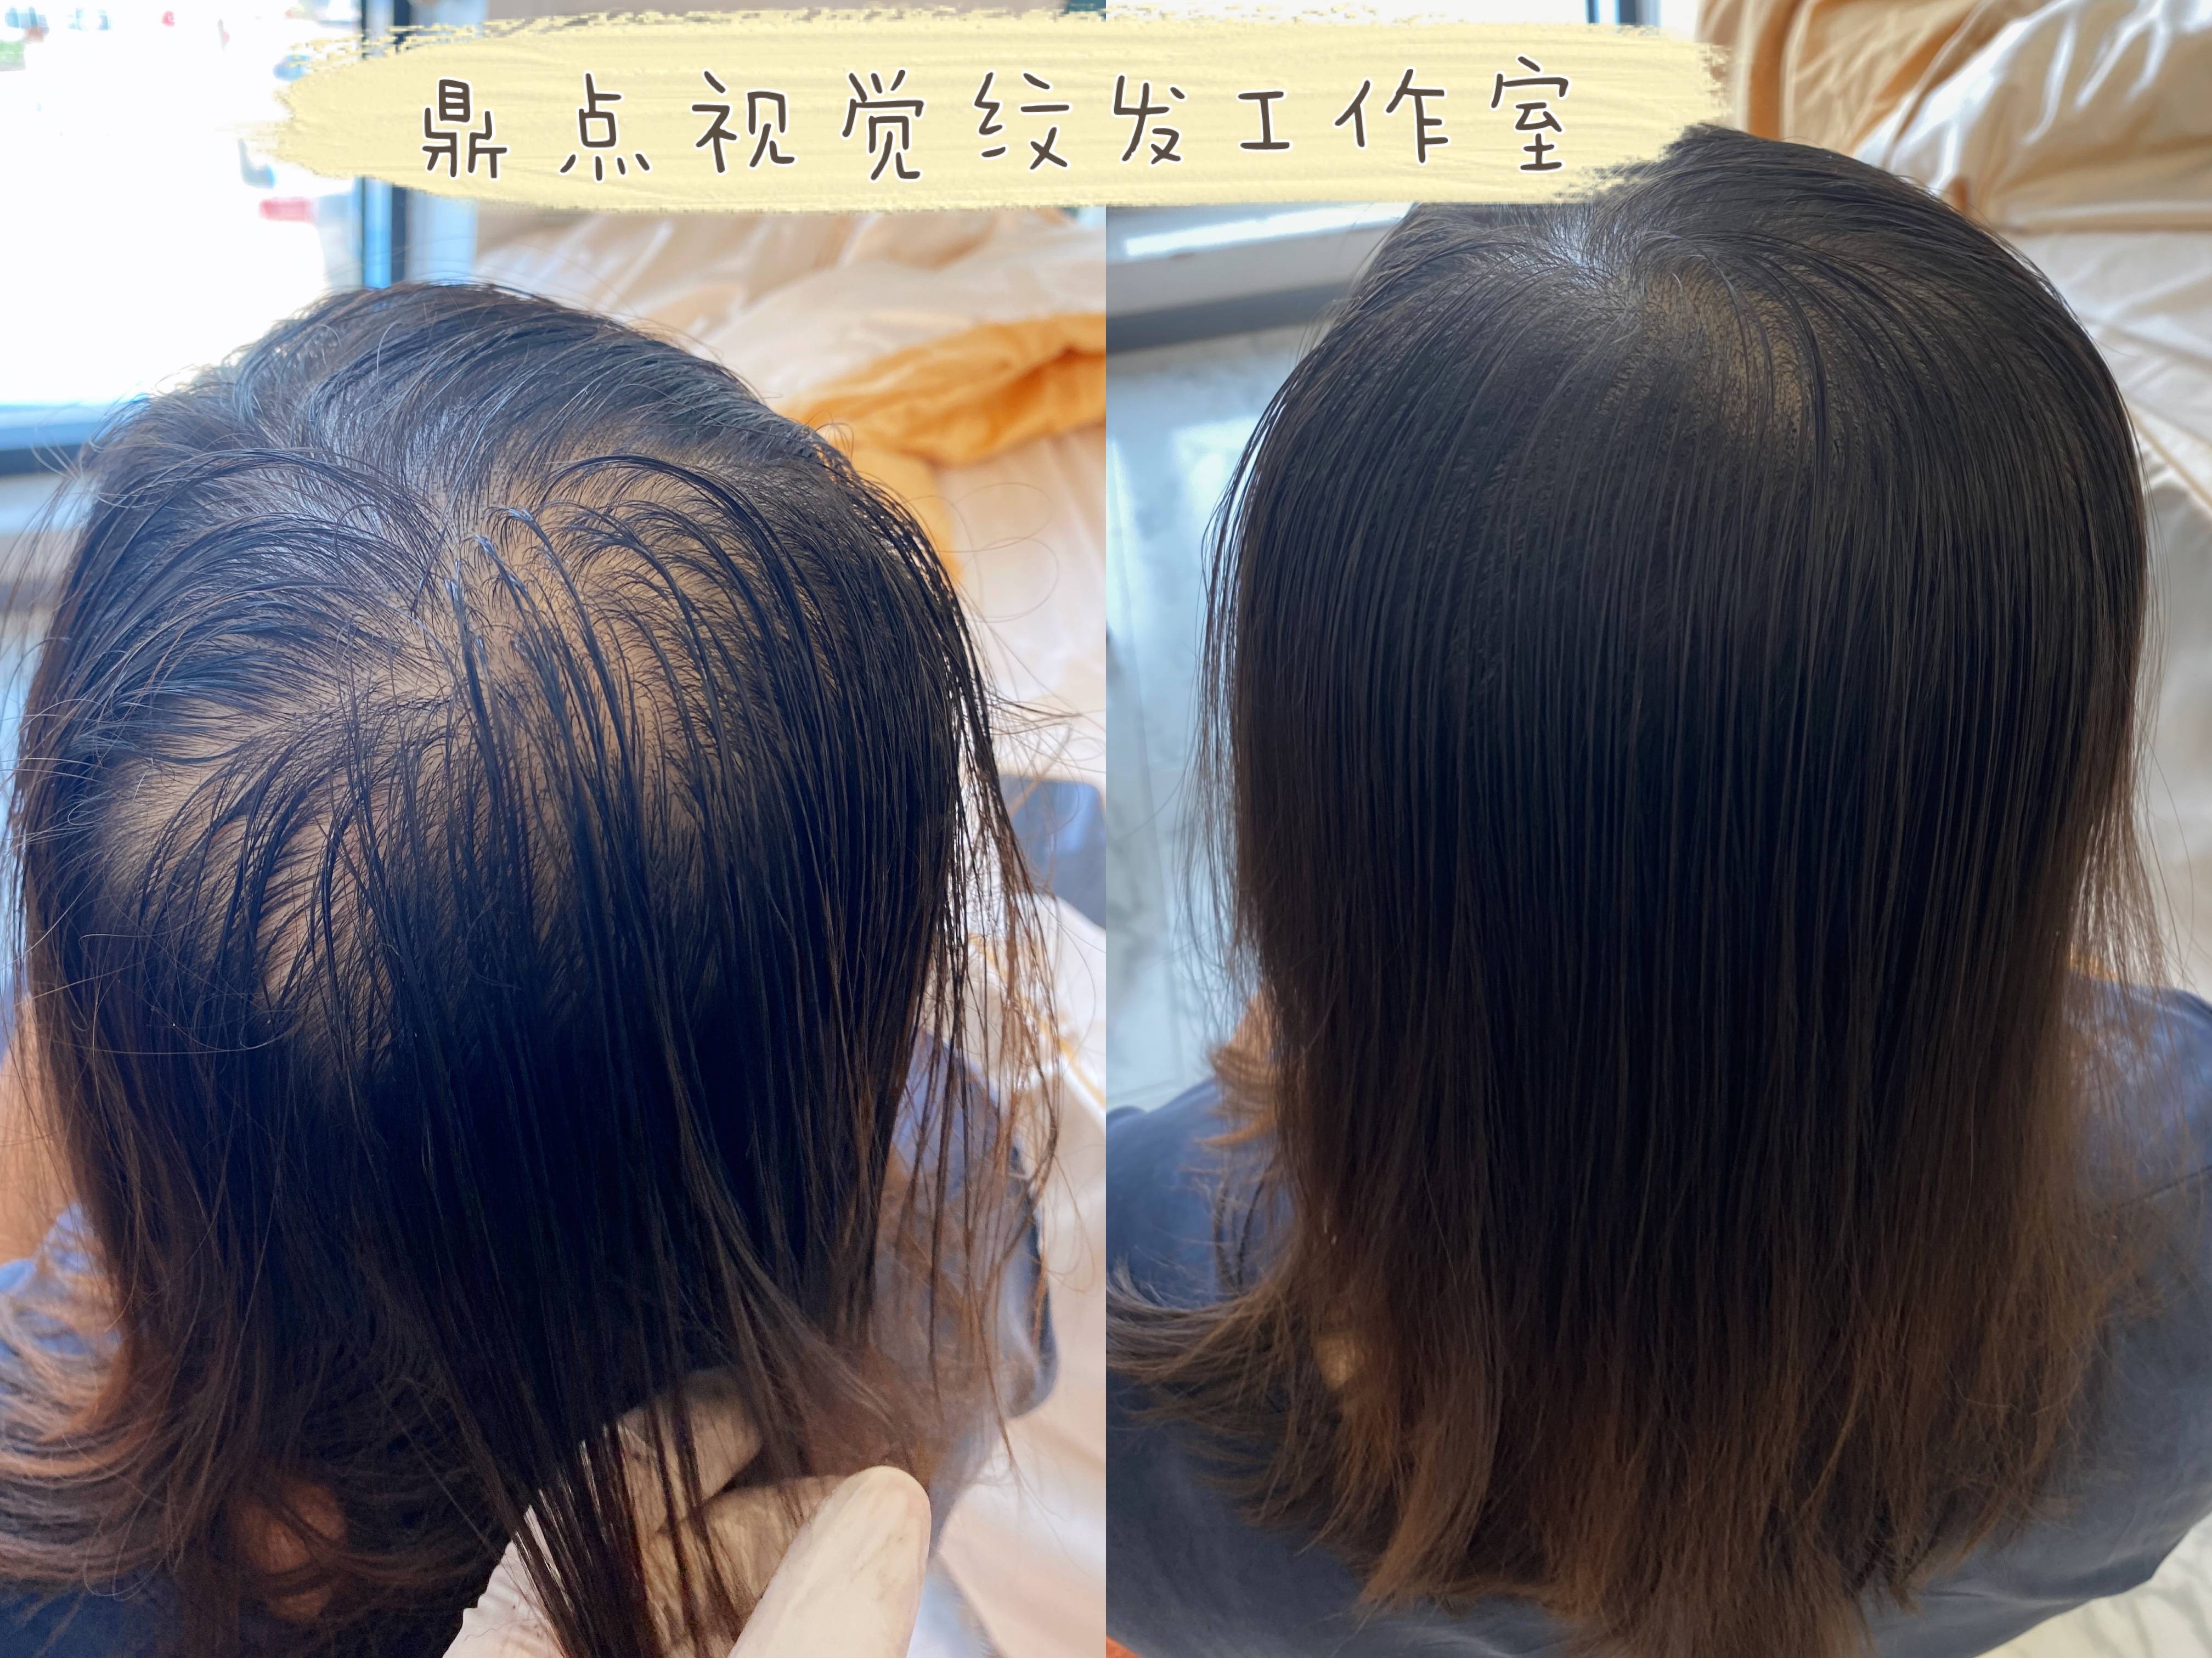 春节前烫个新发型，年底“法式纹理烫”火了-女生发型-条码图